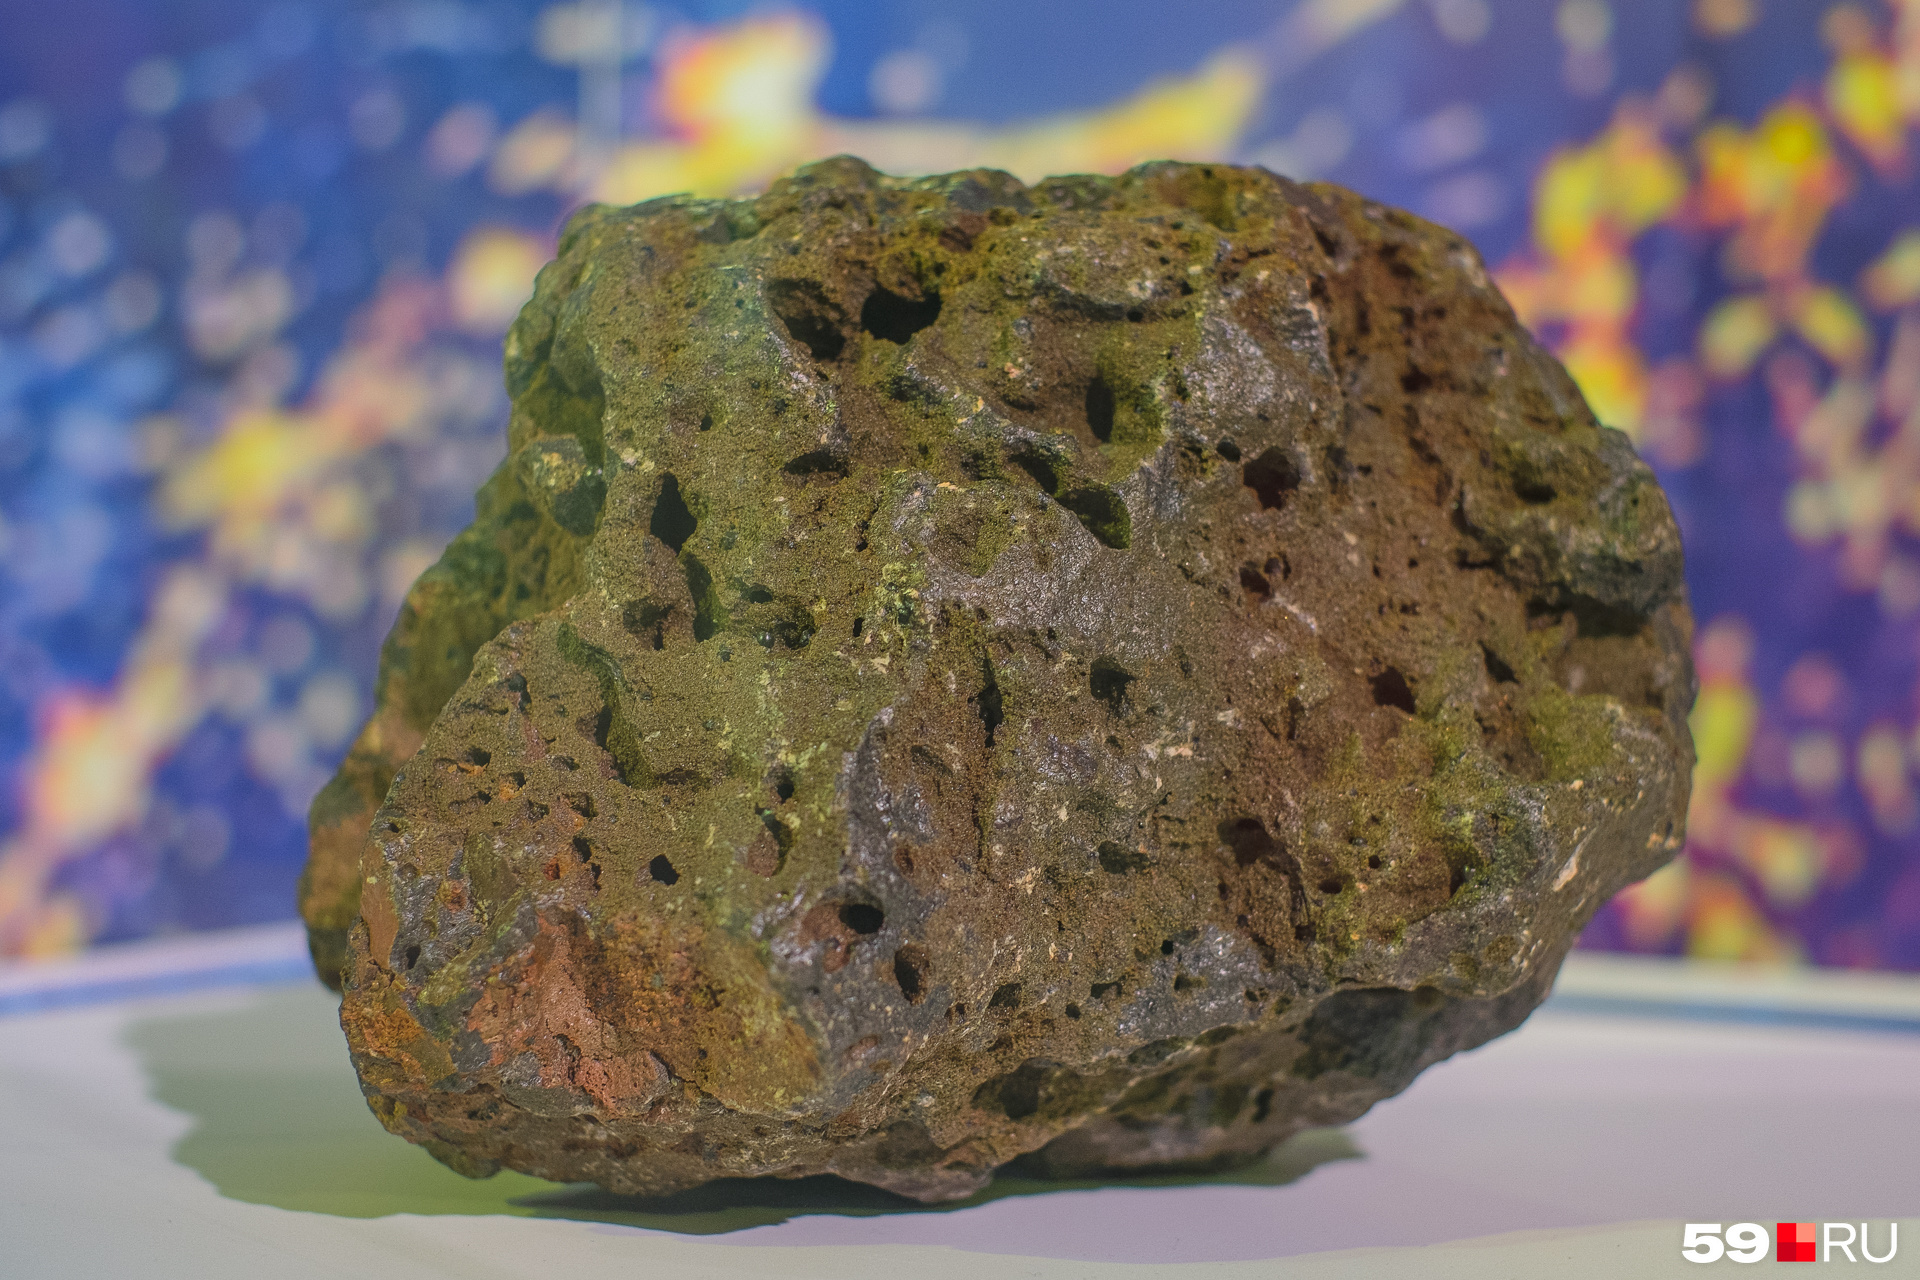 И действительно, самый что ни на есть челябинский метеорит собственной персоной. Привет из космоса